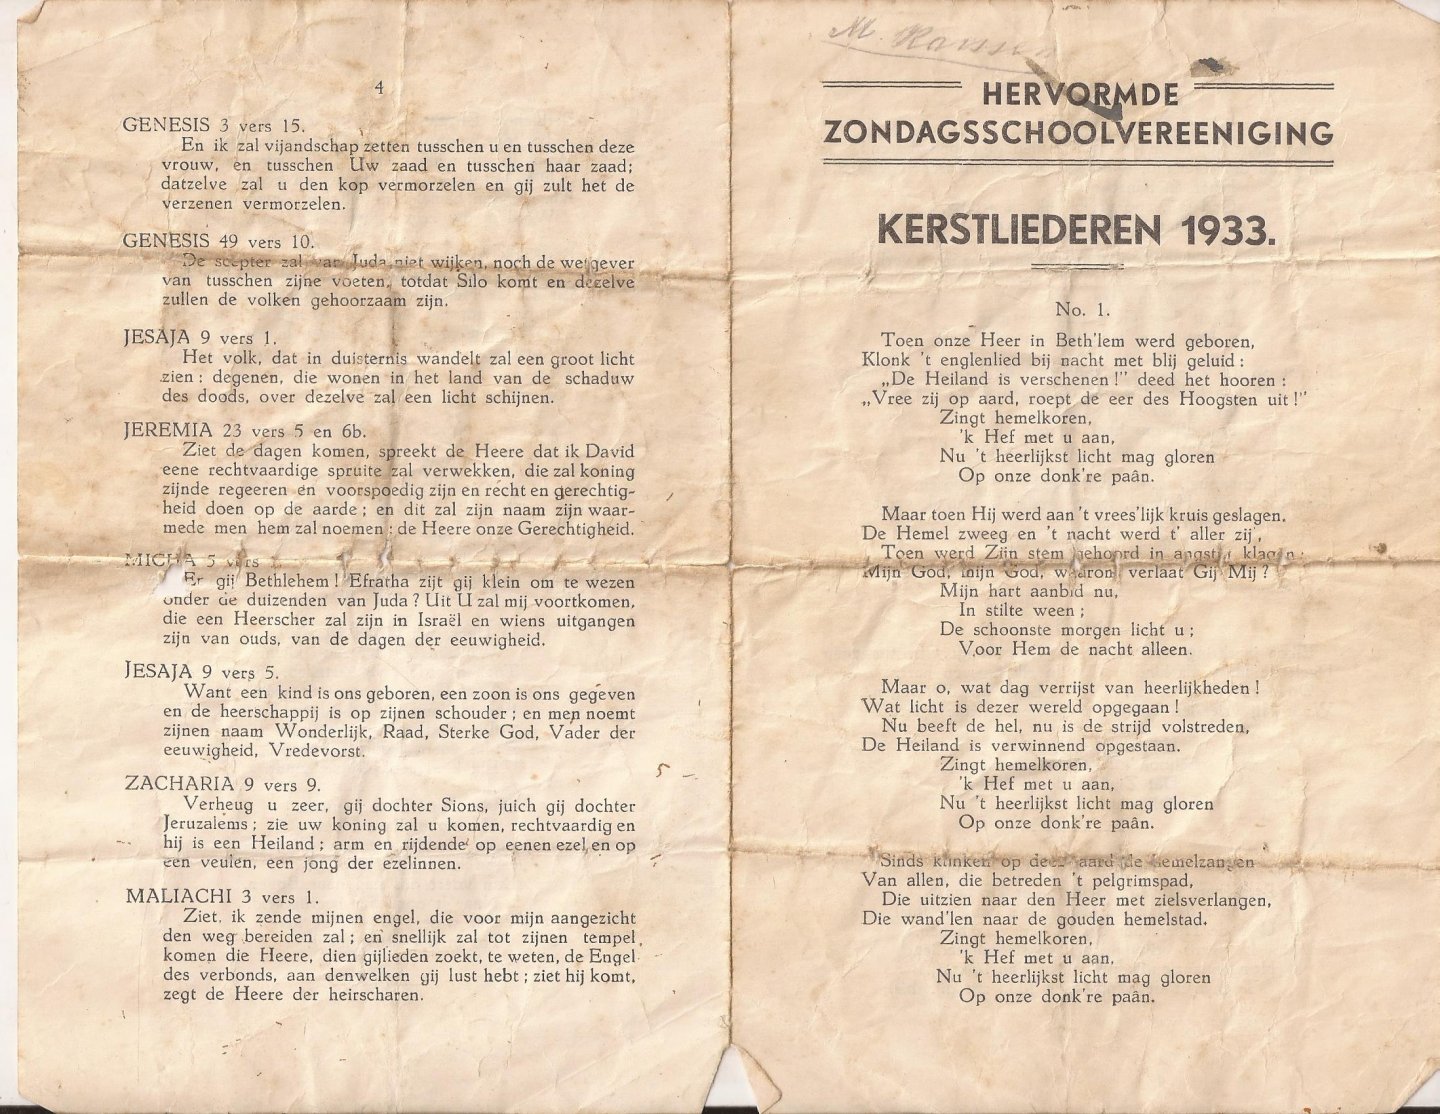  - Kerstliederen Hervormde Zondagsschoolvereniging Kampen 1928, 1932 en 1933